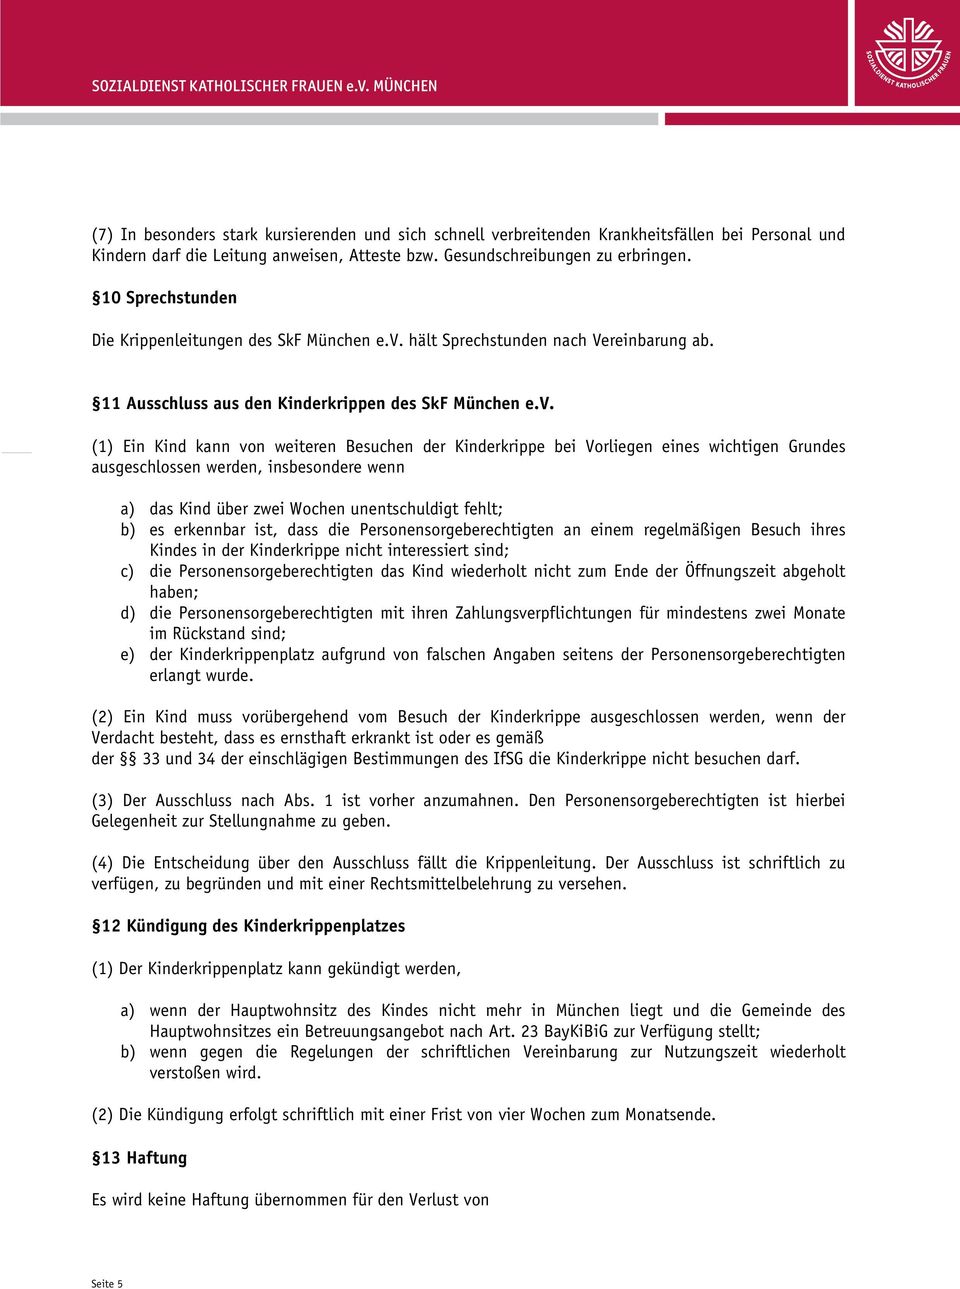 hält Sprechstunden nach Vereinbarung ab. 11 Ausschluss aus den Kinderkrippen des SkF München e.v.